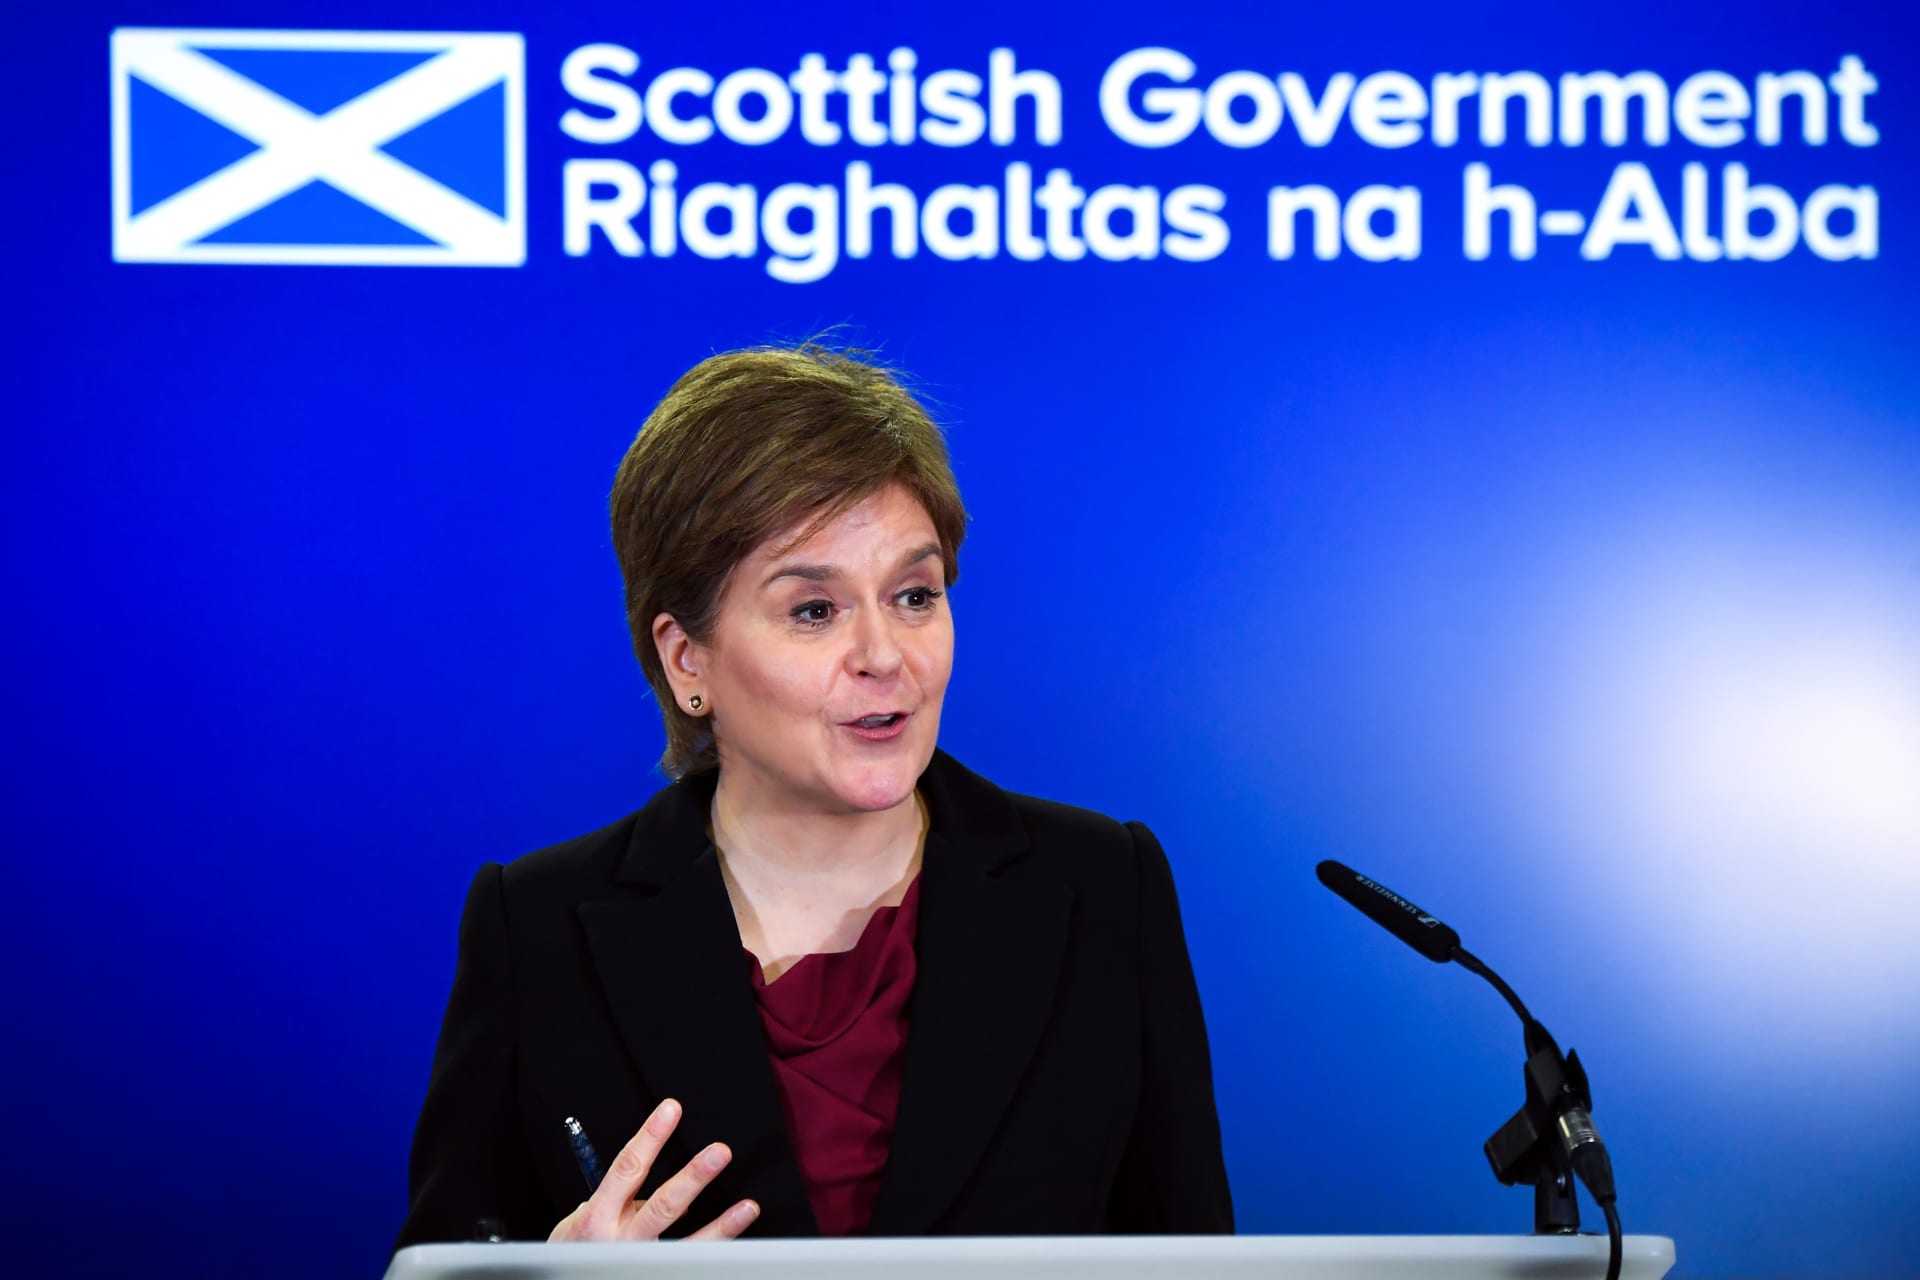 القبض على نيكولا ستورجين رئيسة وزراء اسكتلندا السابقة للتحقيق في الشؤون المالية لحزبها